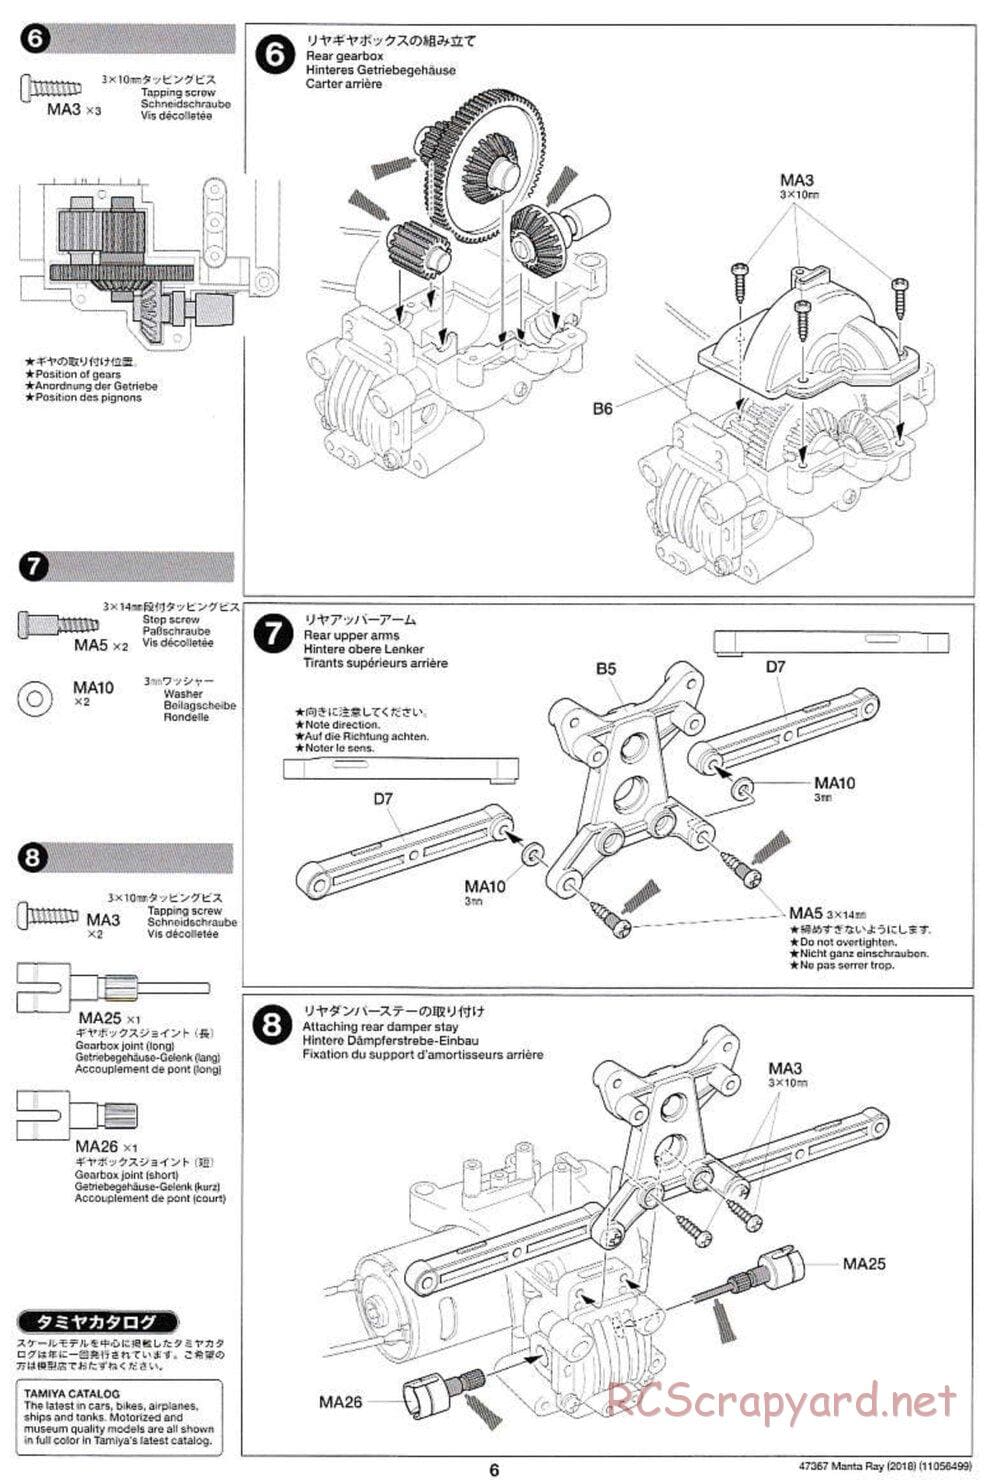 Tamiya - Manta Ray 2018 - DF-01 Chassis - Manual - Page 6